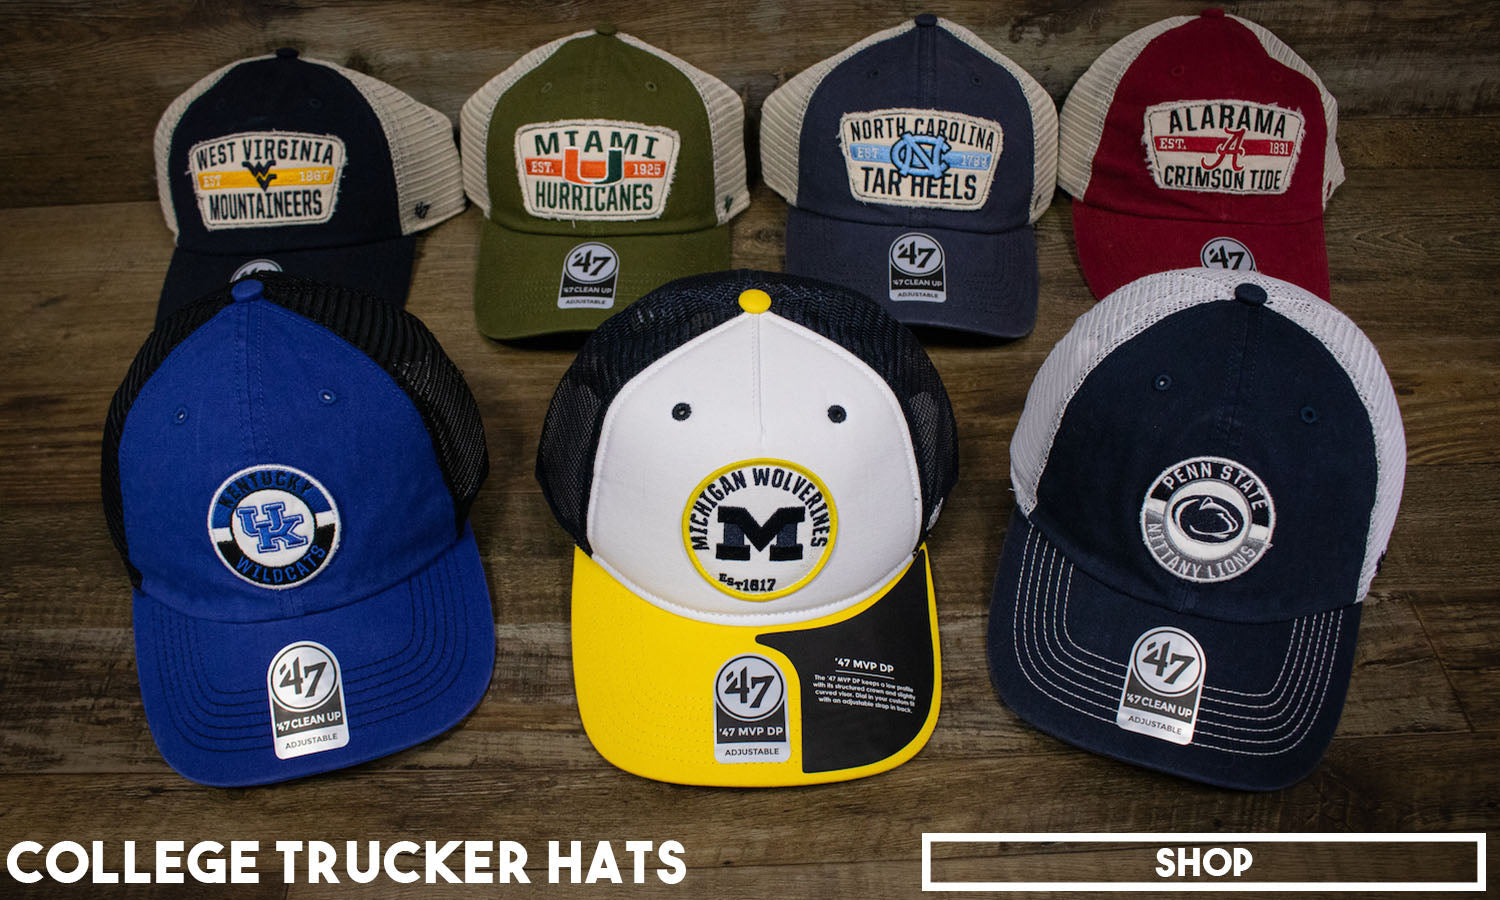 College Trucker Hats